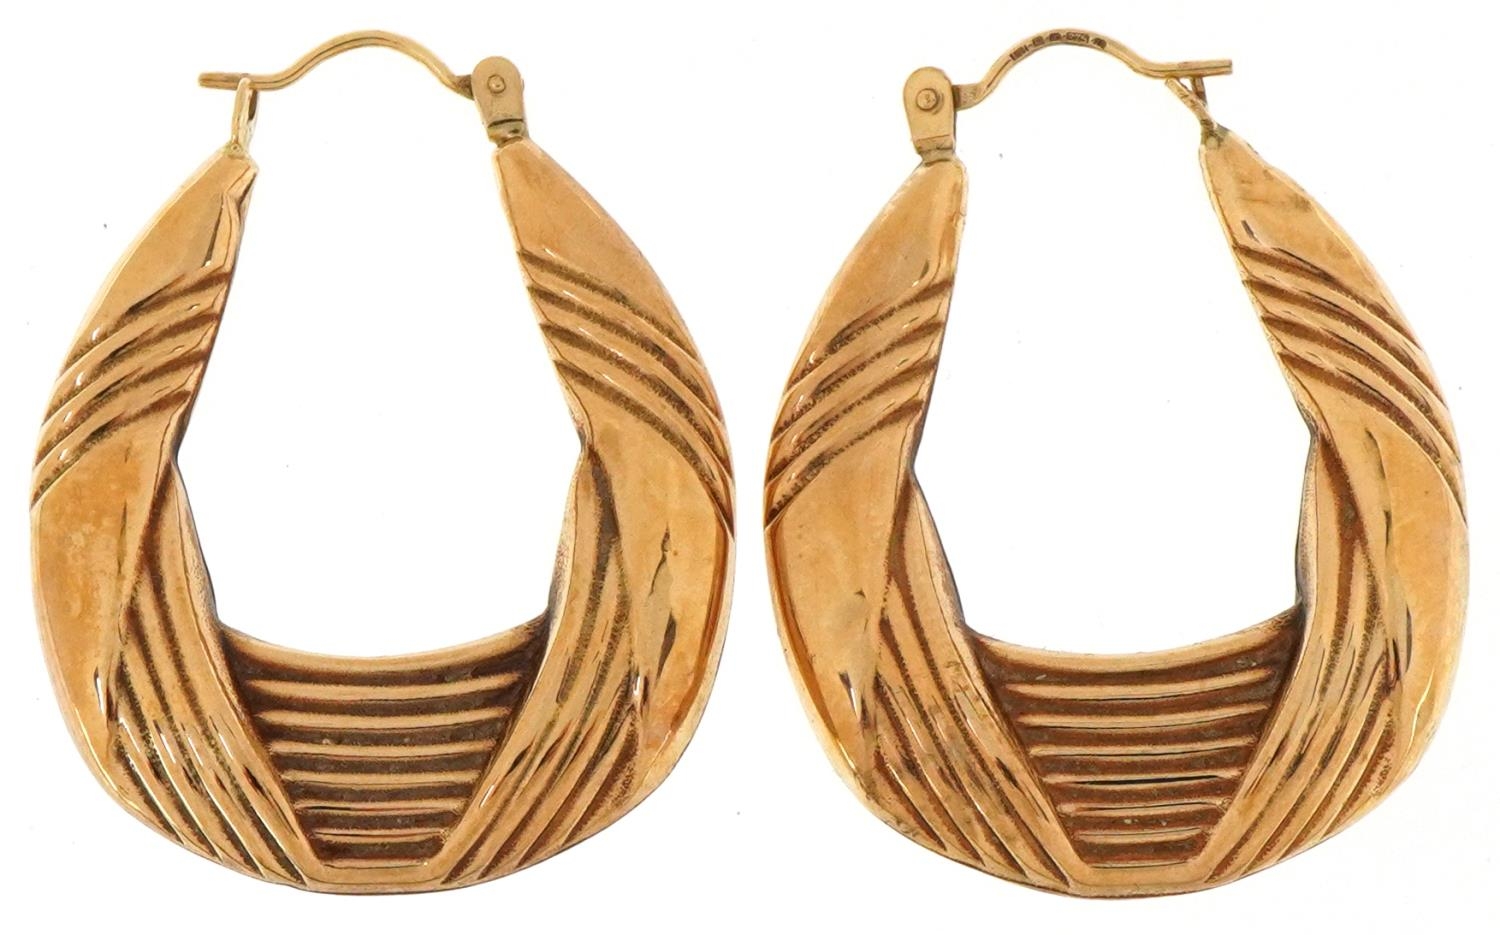 Pair of large 9ct gold Gypsy hoop earrings, each 3.5cm high, total 3.0g